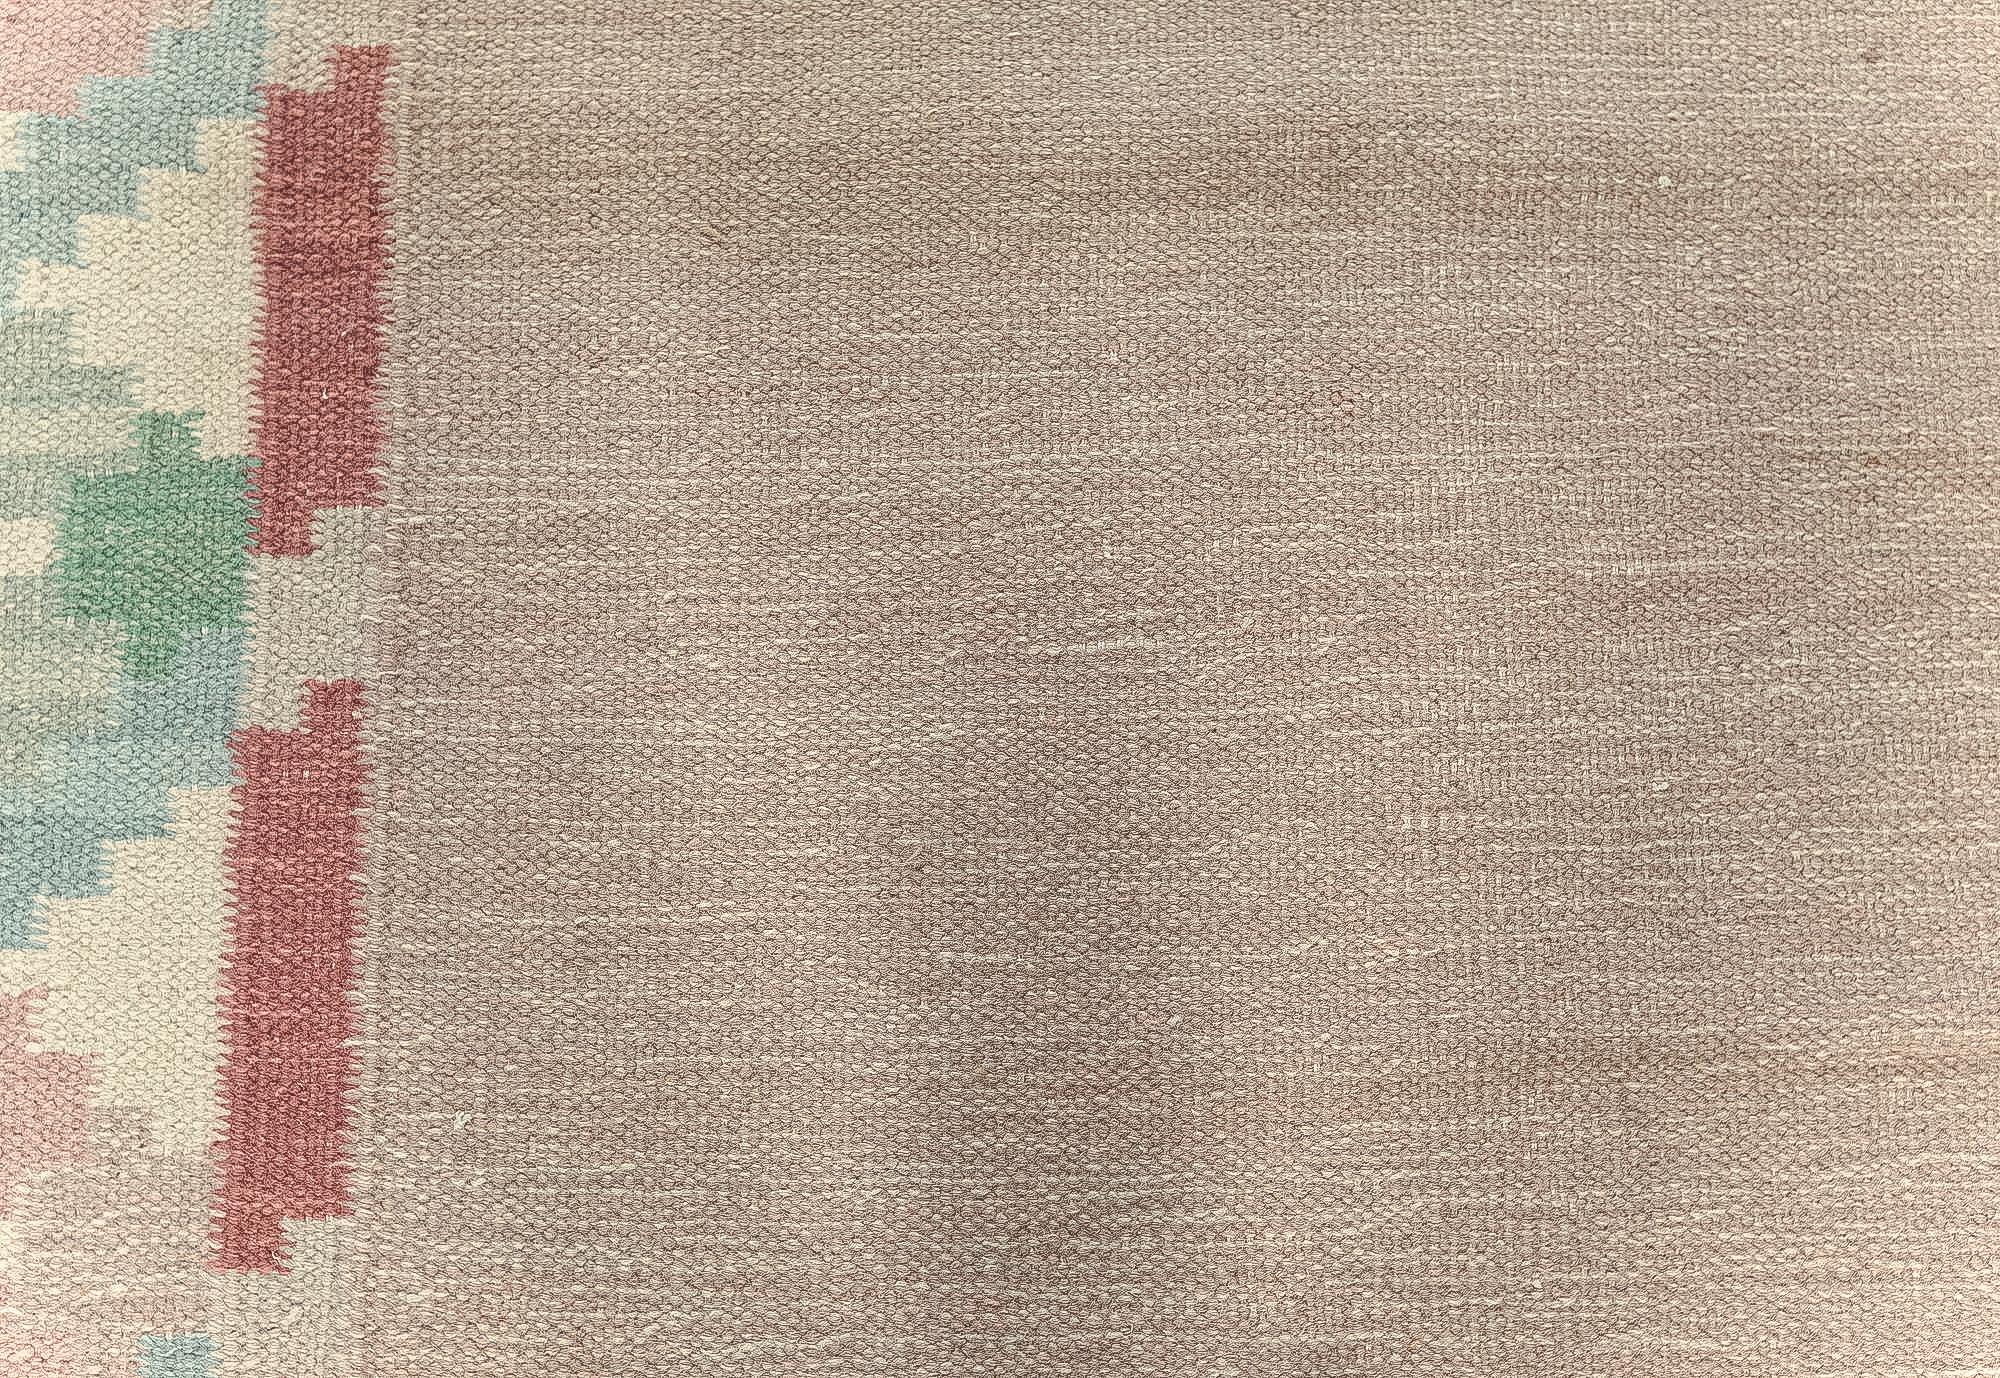 Vintage Swedish beige, green, pink flat weave rug.
Size: 6'3